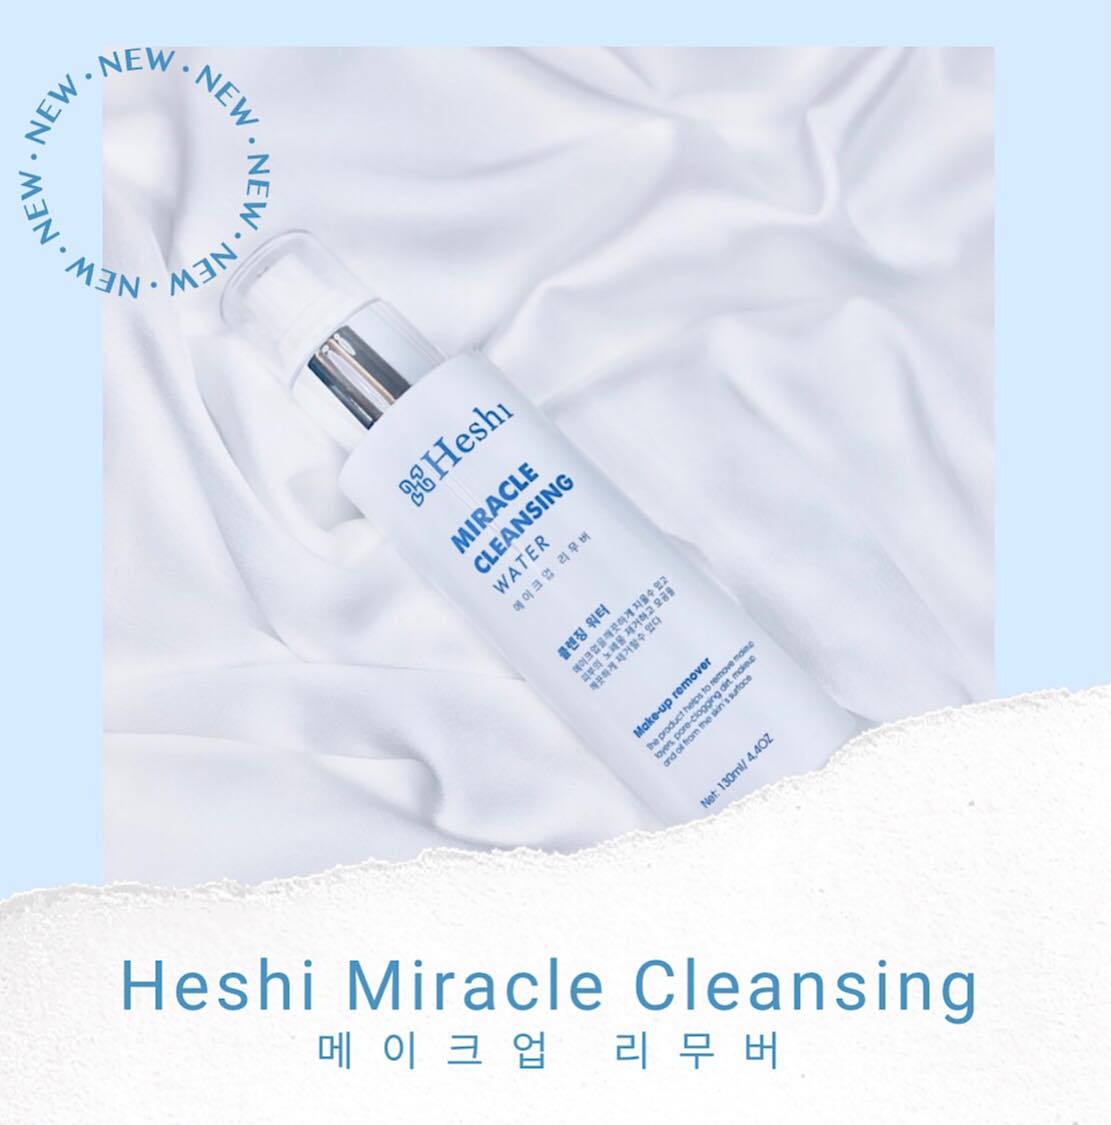 Nếu bạn đang tìm kiếm một sản phẩm đa năng, vừa giúp làm sạch nhẹ nhàng, vừa giúp cân bằng độ pH, dưỡng ẩm… thì nước tẩy trang Heshi chính là một sản phẩm tuyệt vời dành cho bạn!